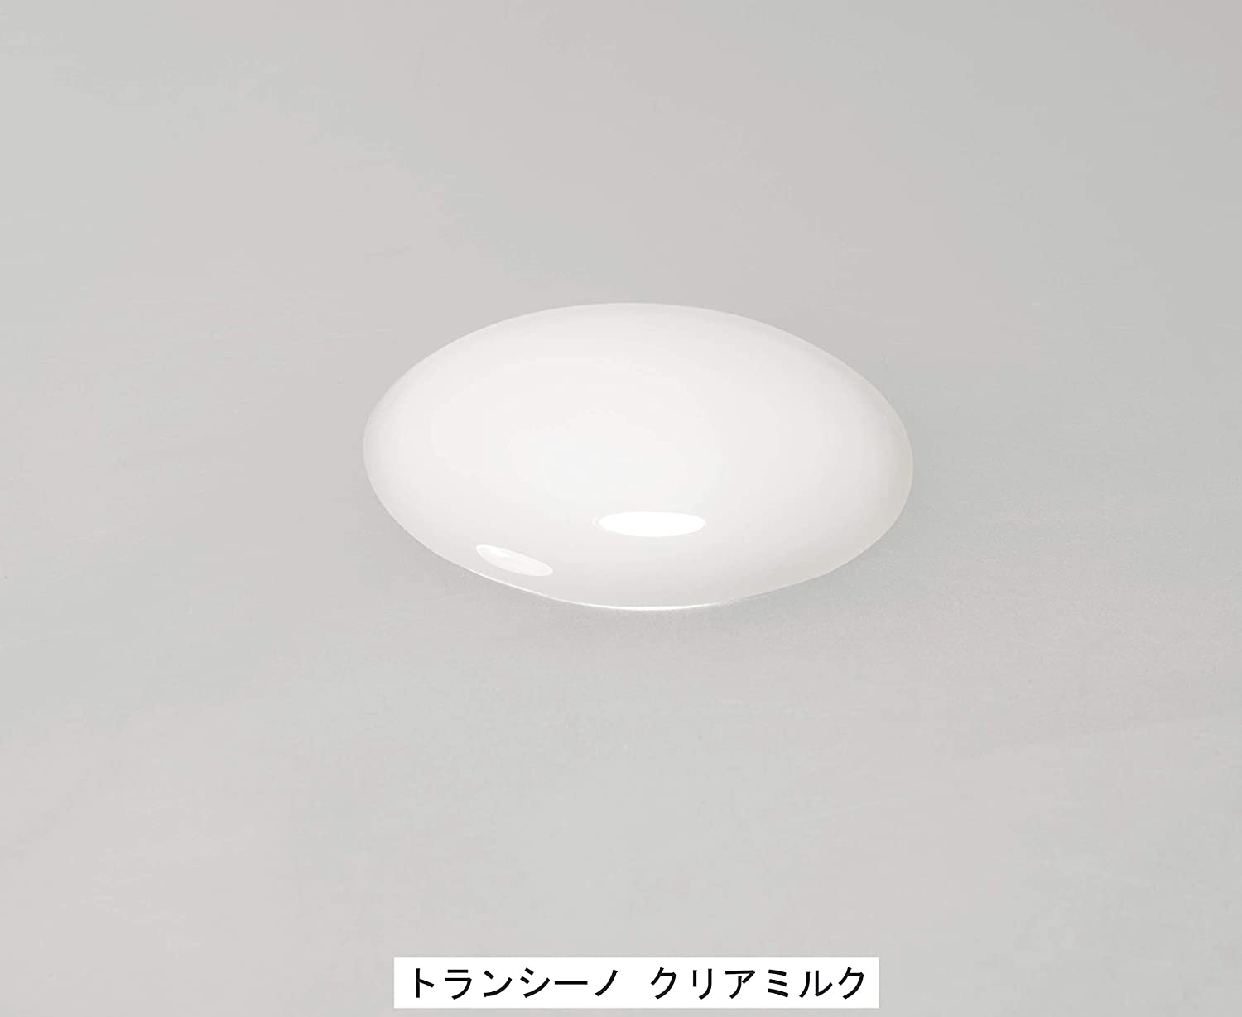 TRANSINO(トランシーノ) 薬用ホワイトニングクリアミルクの商品画像5 